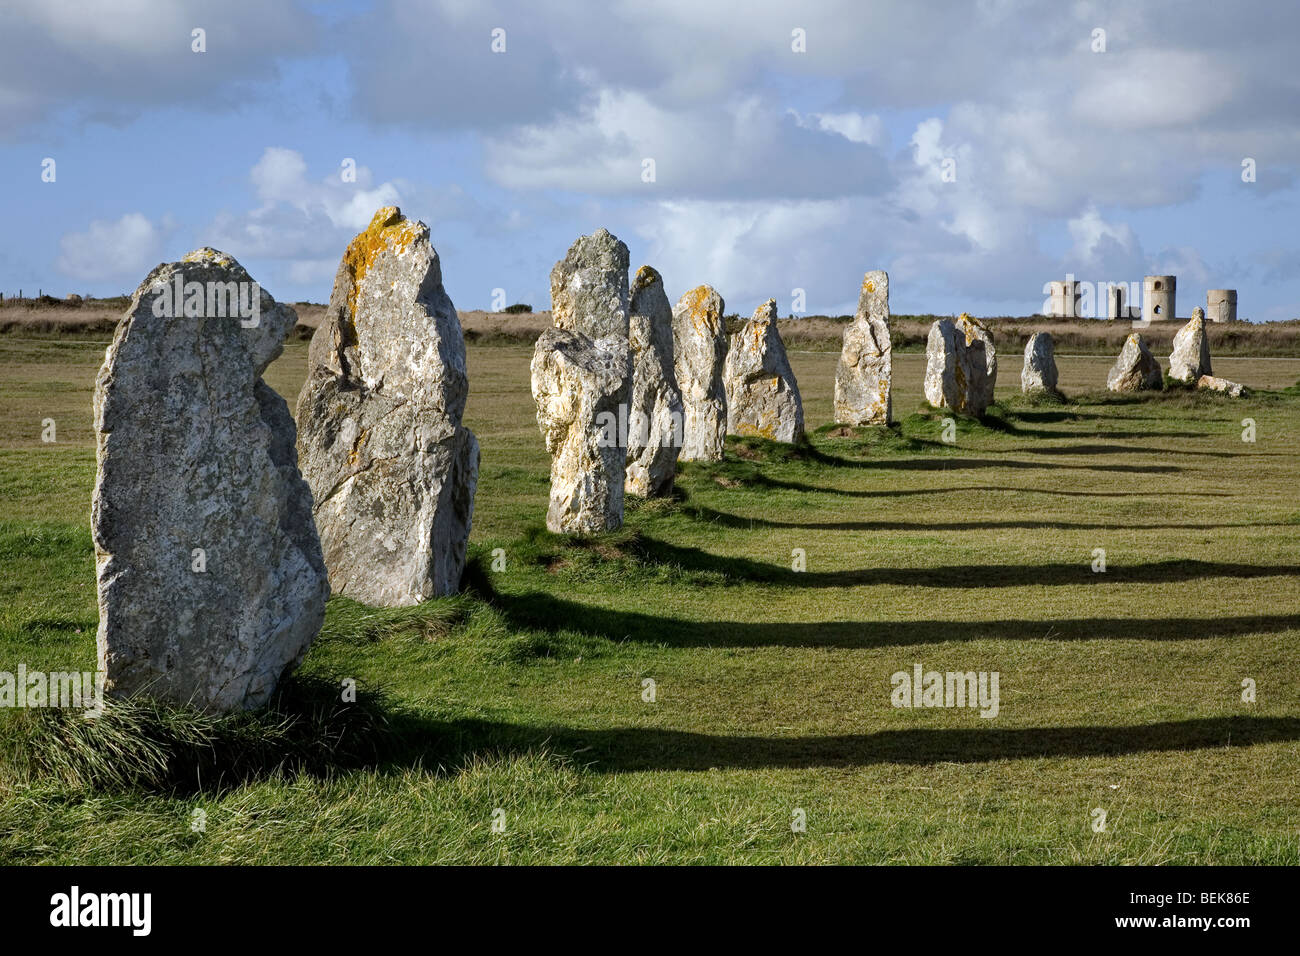 Alignements de Lagatjar néolithique en pierre, l'alignement de menhirs mégalithiques à Camaret-sur-Mer, Bretagne, Finistère, France Banque D'Images